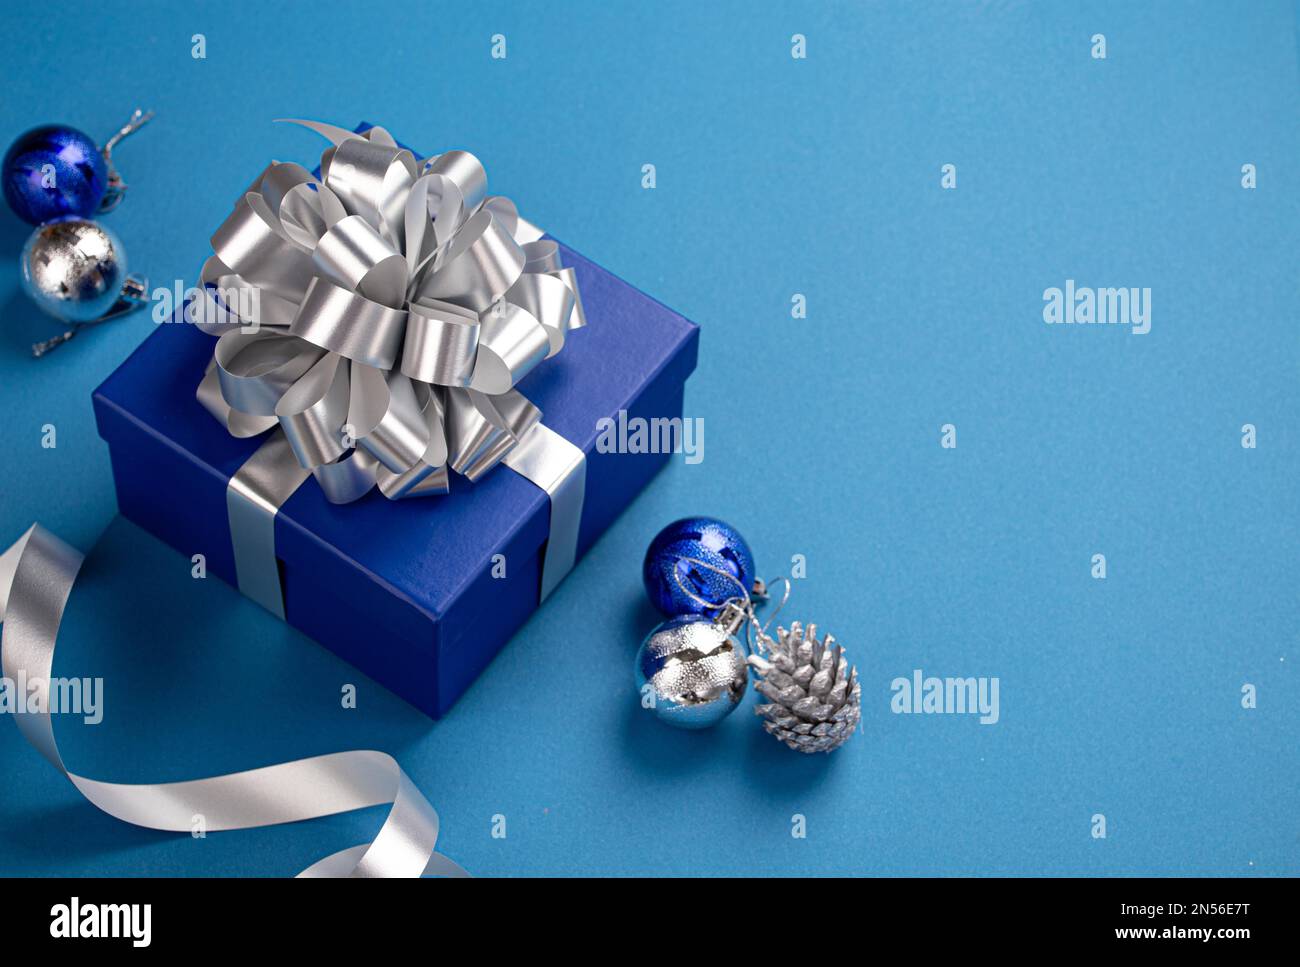 Weihnachtsgeschenkbox in blaues Papier mit silbernem Band und Schleife verpackt, Weihnachtskugeln Dekoration auf blauem Papierhintergrund mit Kopierbereich Stockfoto